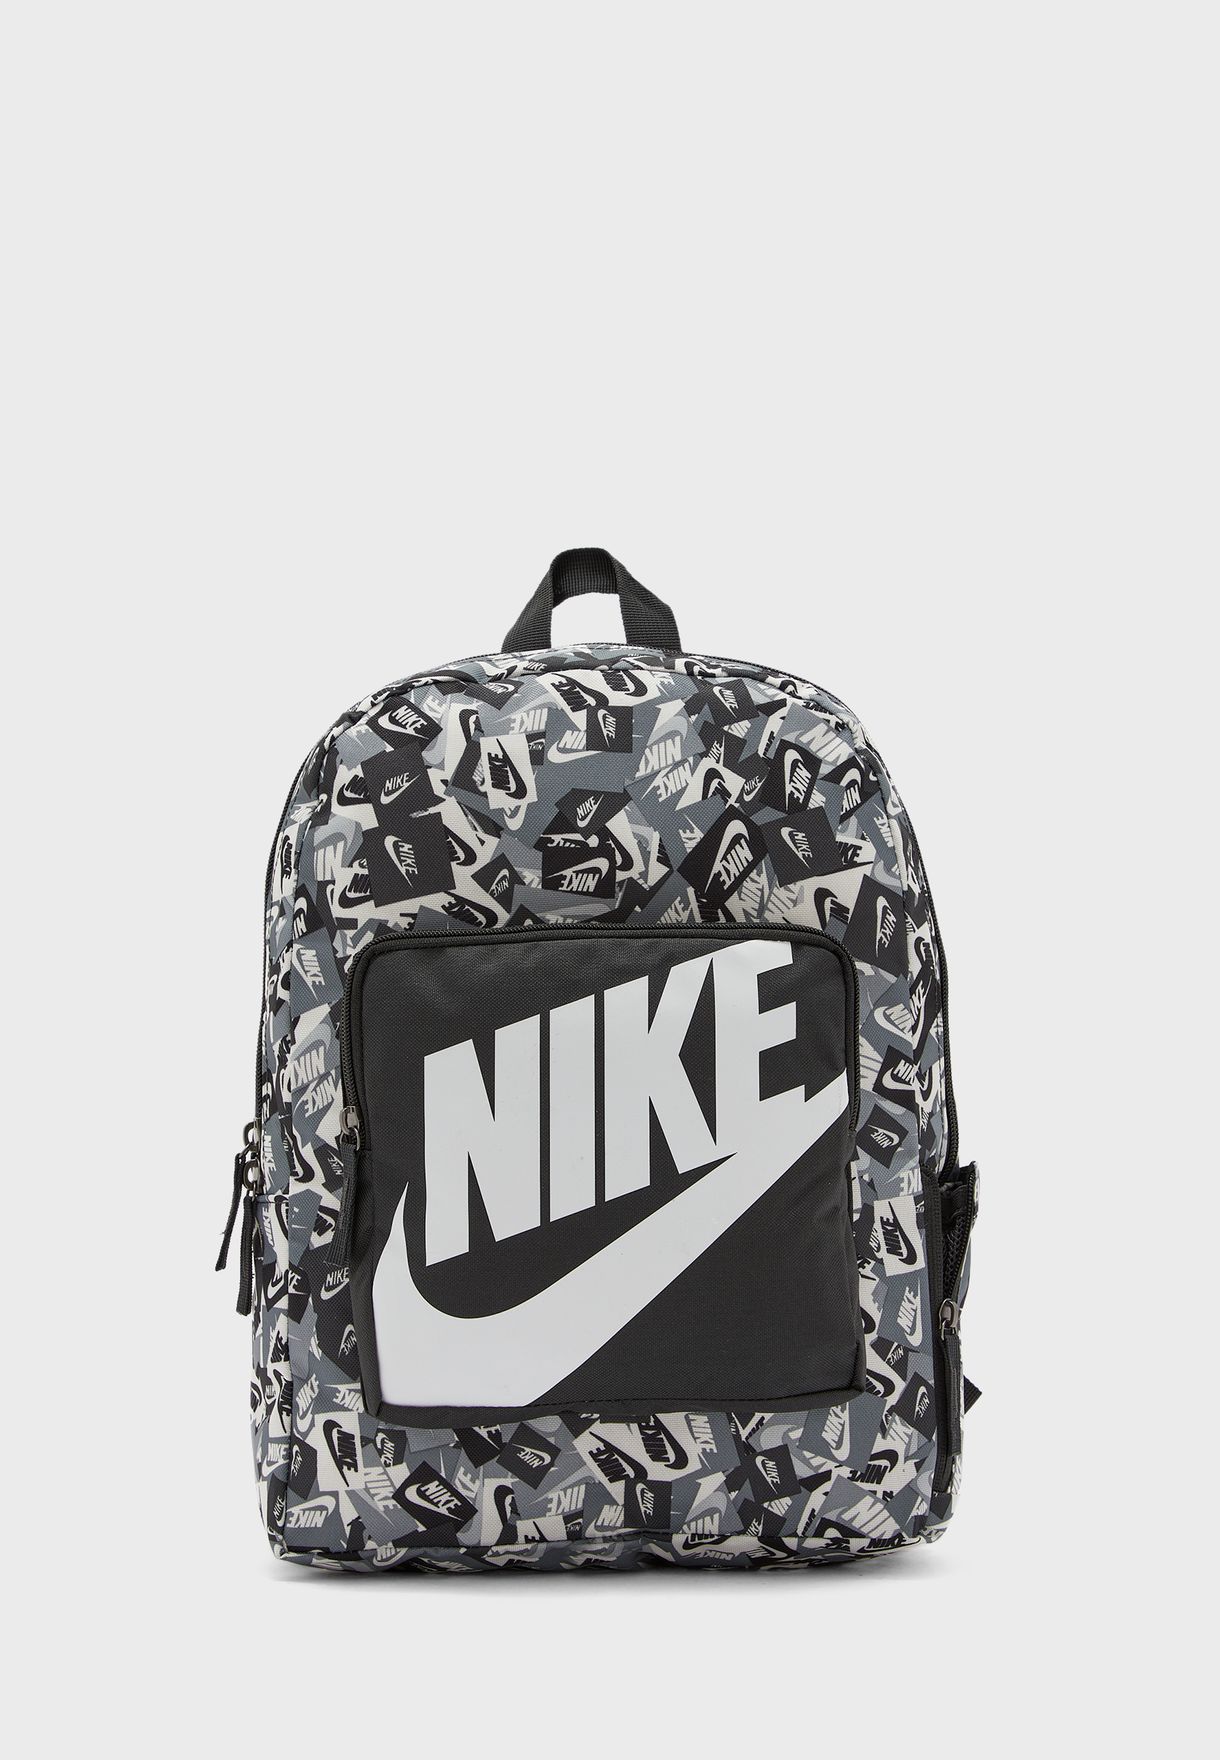 buy nike backpack